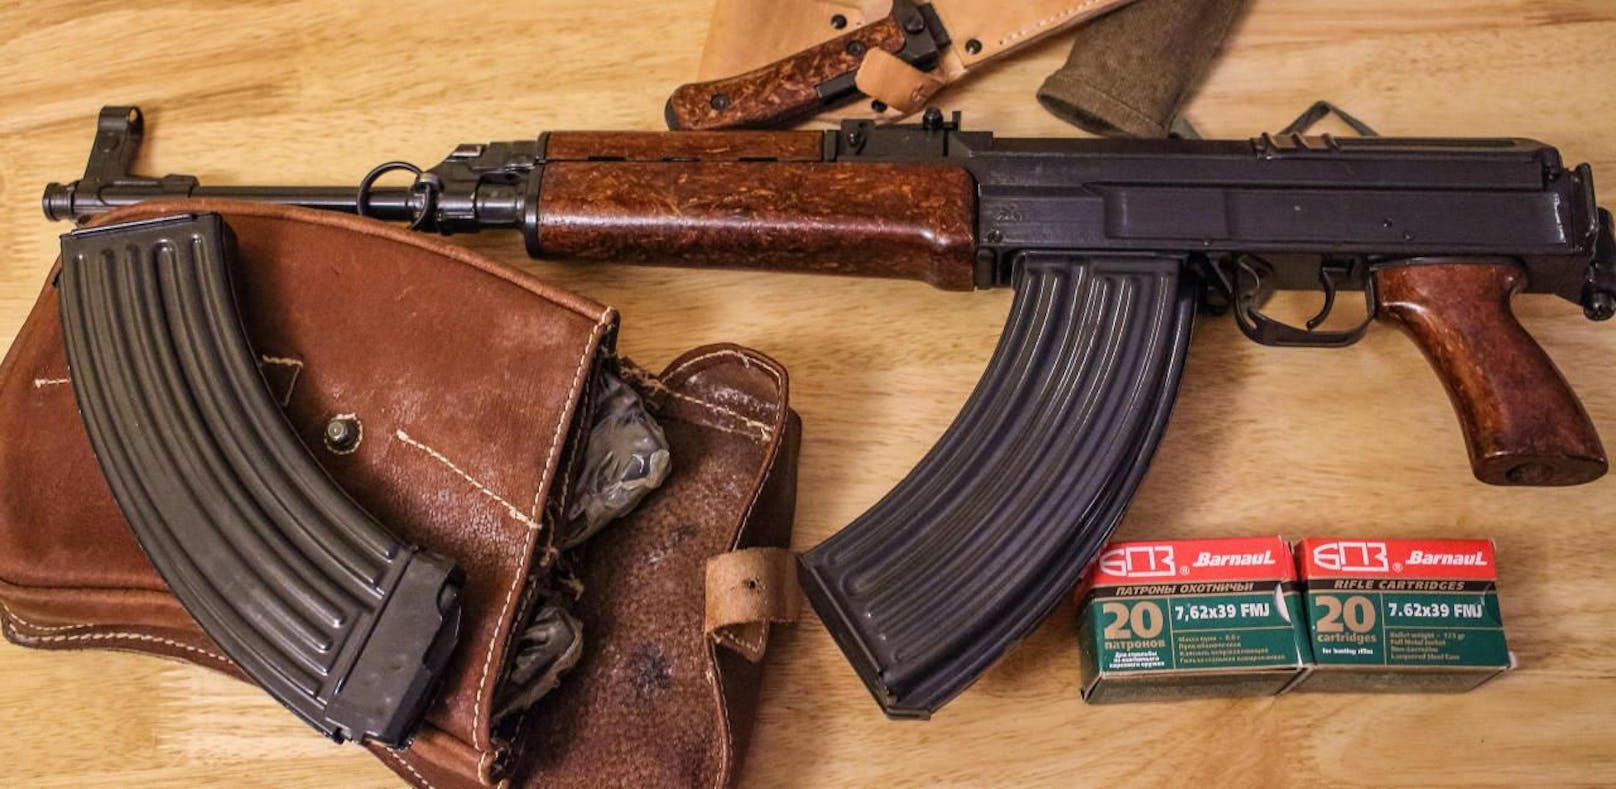 Die sichergestellten Waffen, darunter eine AK-47, nach einer Schießerei in Danzig, Polen. Archivbild.